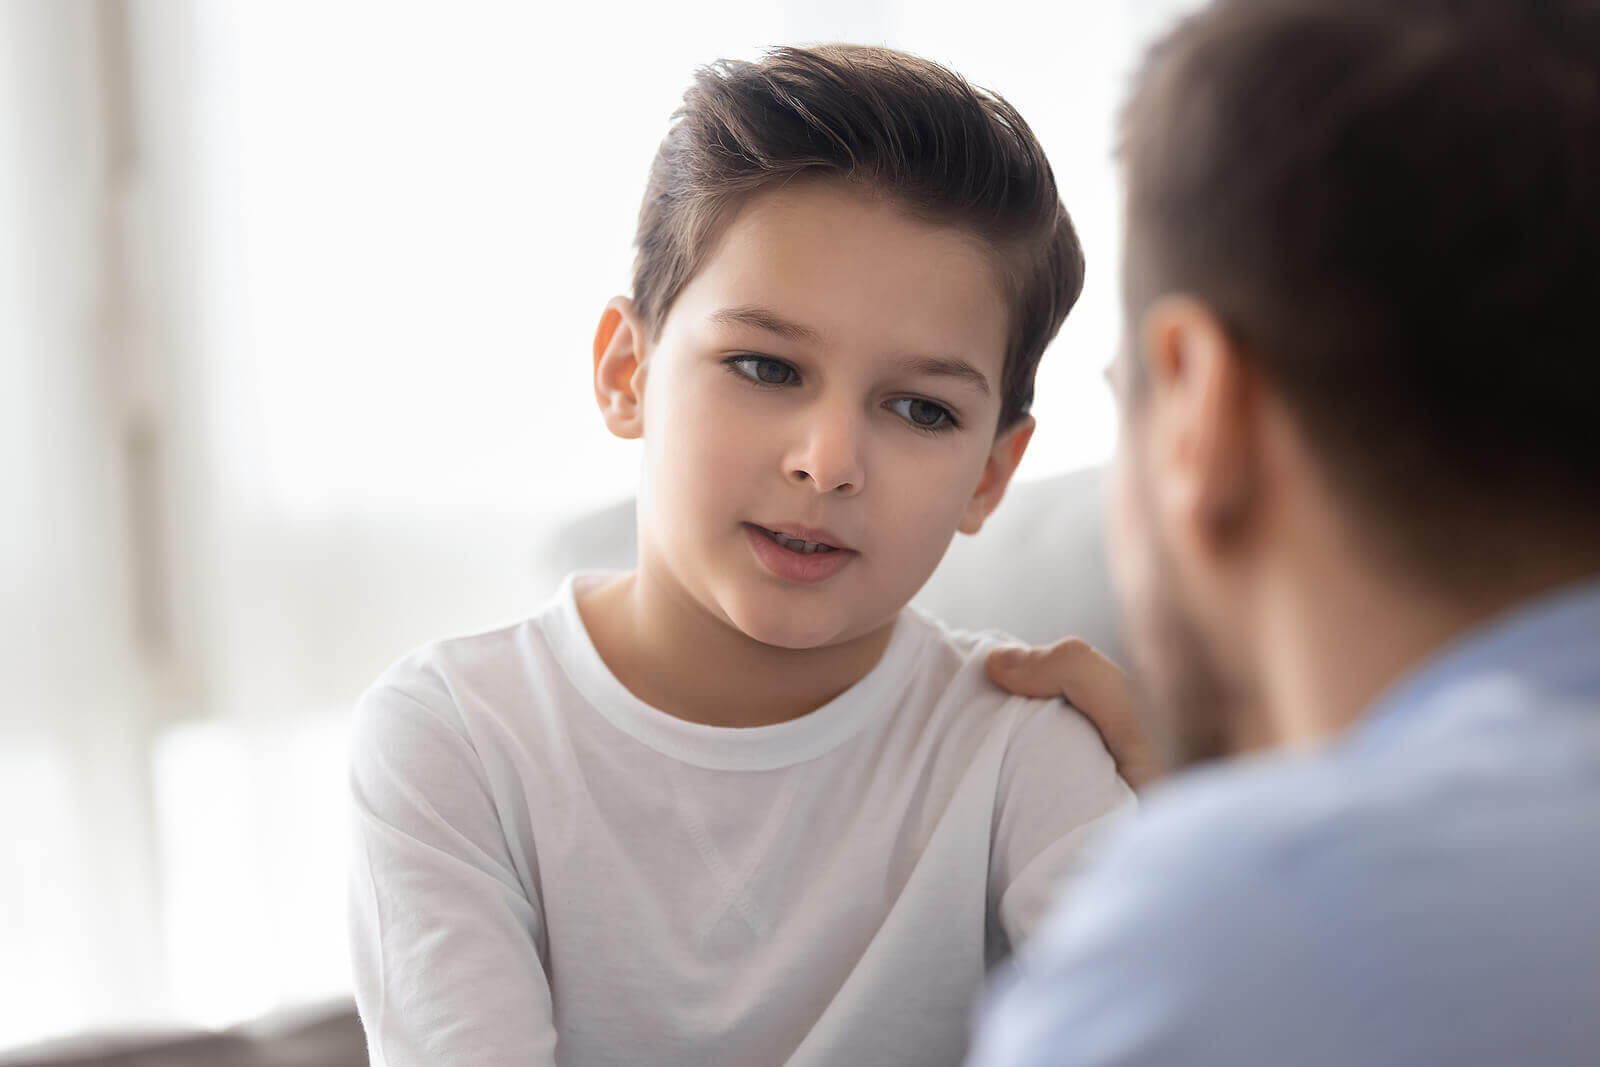 fördelar med mentalisering: pappa talar med son